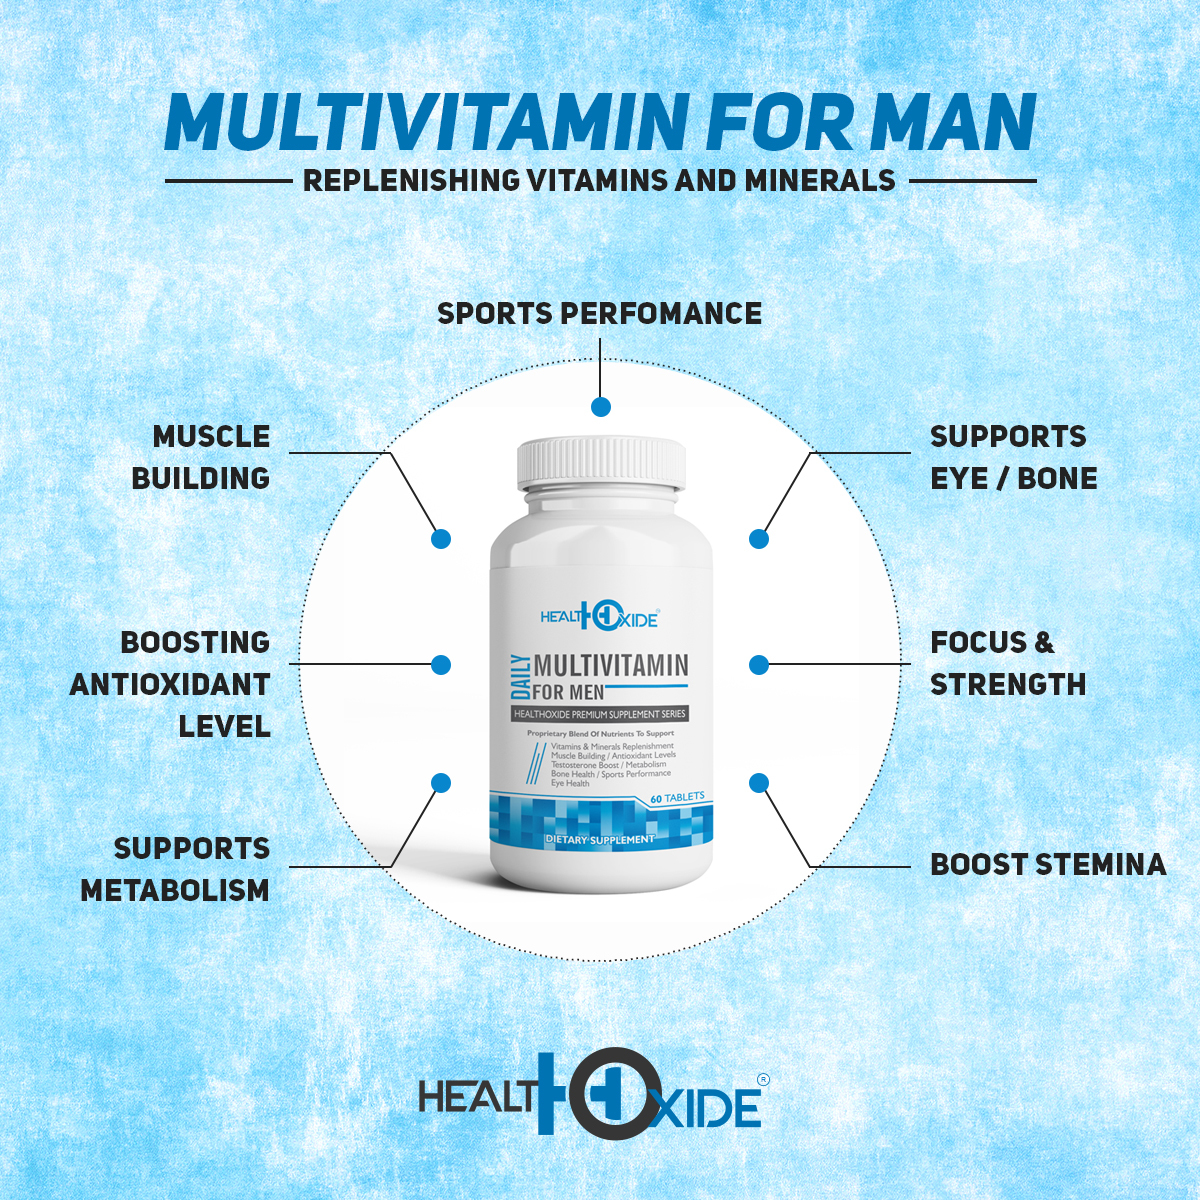 Multivitamin For Men Tablets